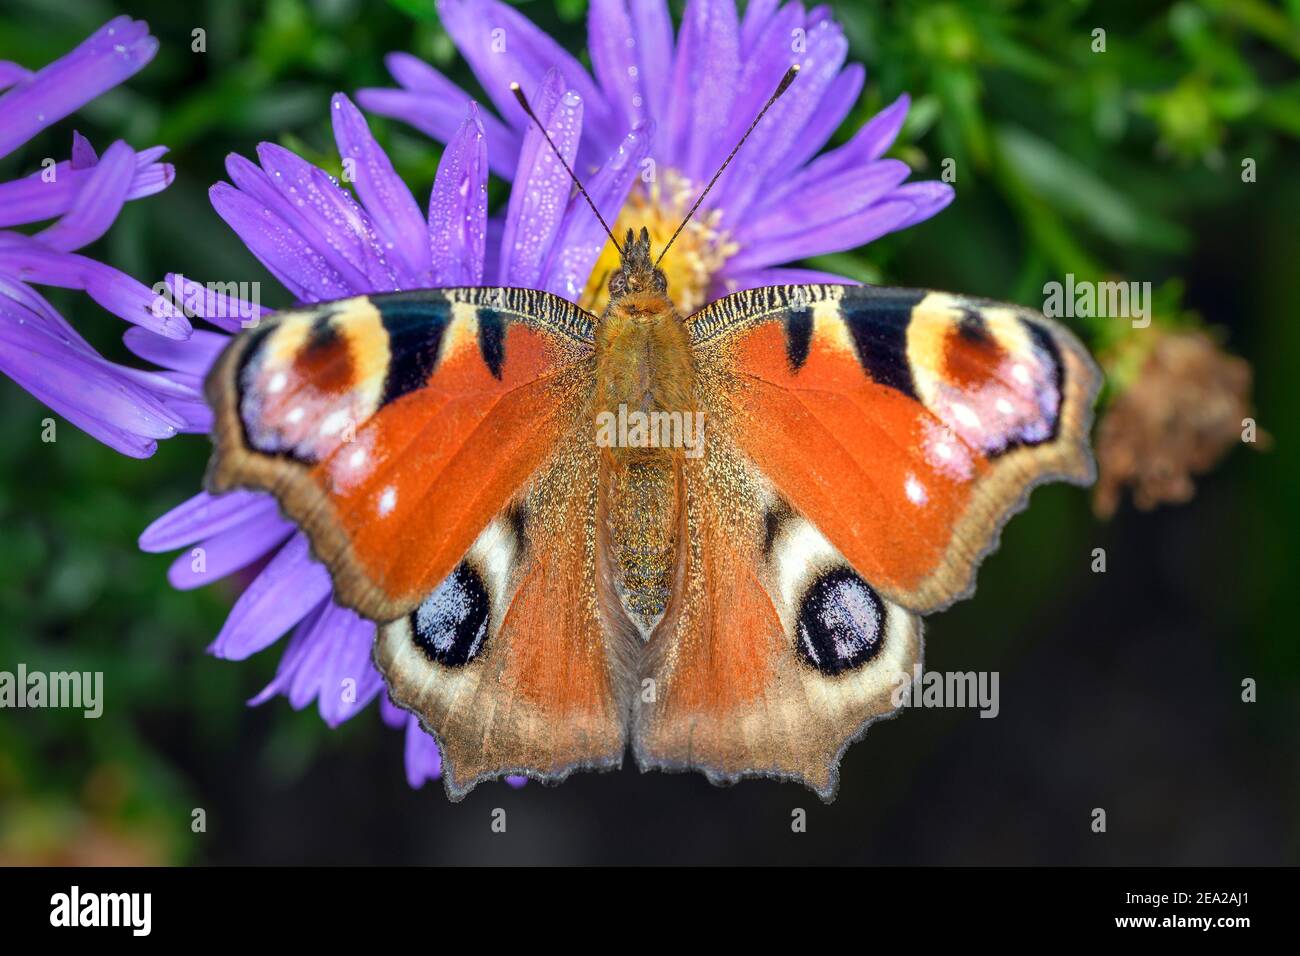 Farfalla europea del pavone - Aglais-io - riposante sul fiore Di un fiore di Aster Foto Stock